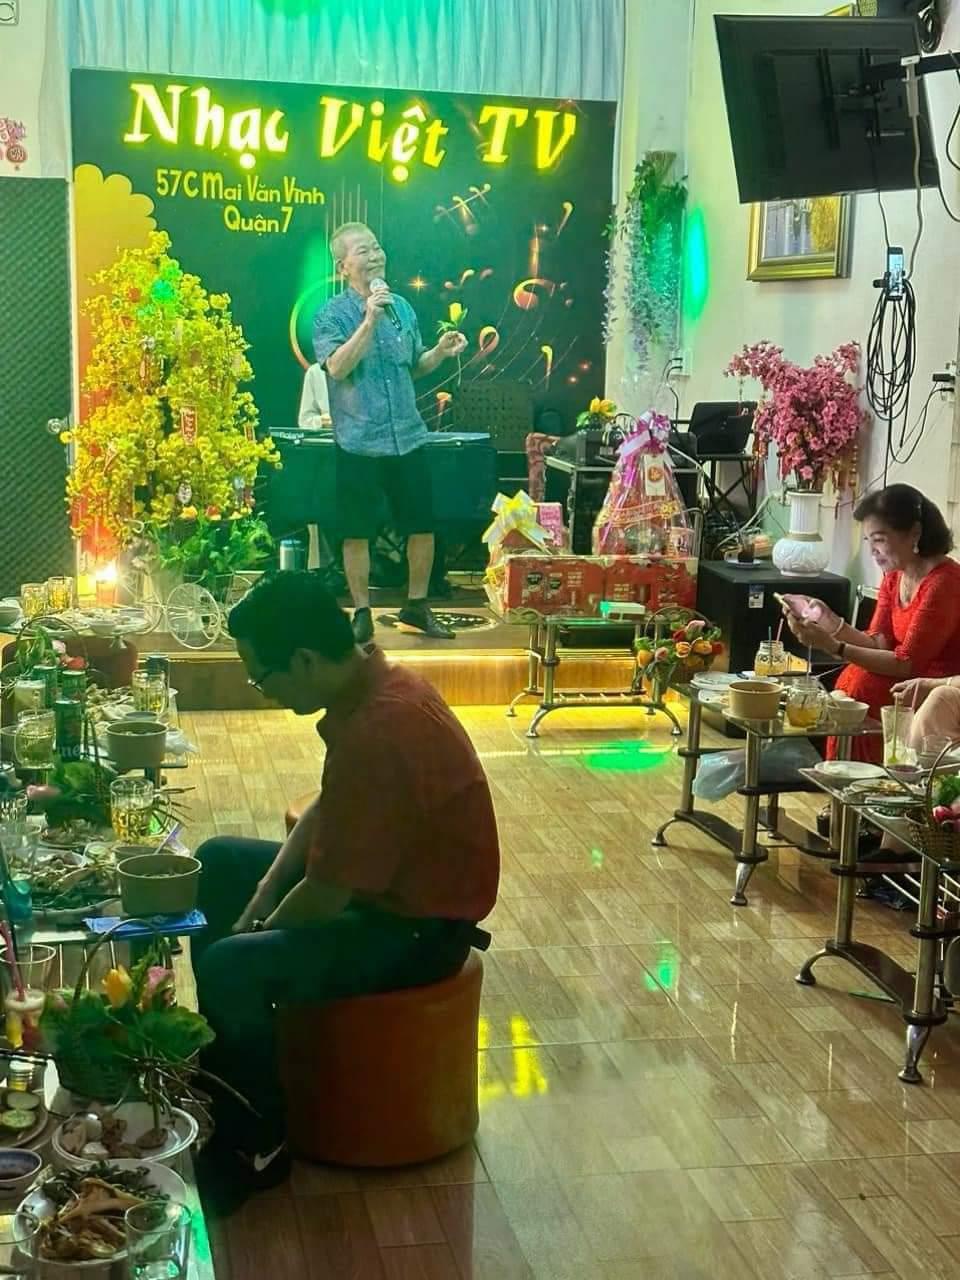 Sang quán Cà phê hát với nhau – Cà Phê Nhạc Việt TV đường Mai Văn Vĩnh Quận 7. Tel : 0939134907  – 0906318547 ( Chính chủ )1572597